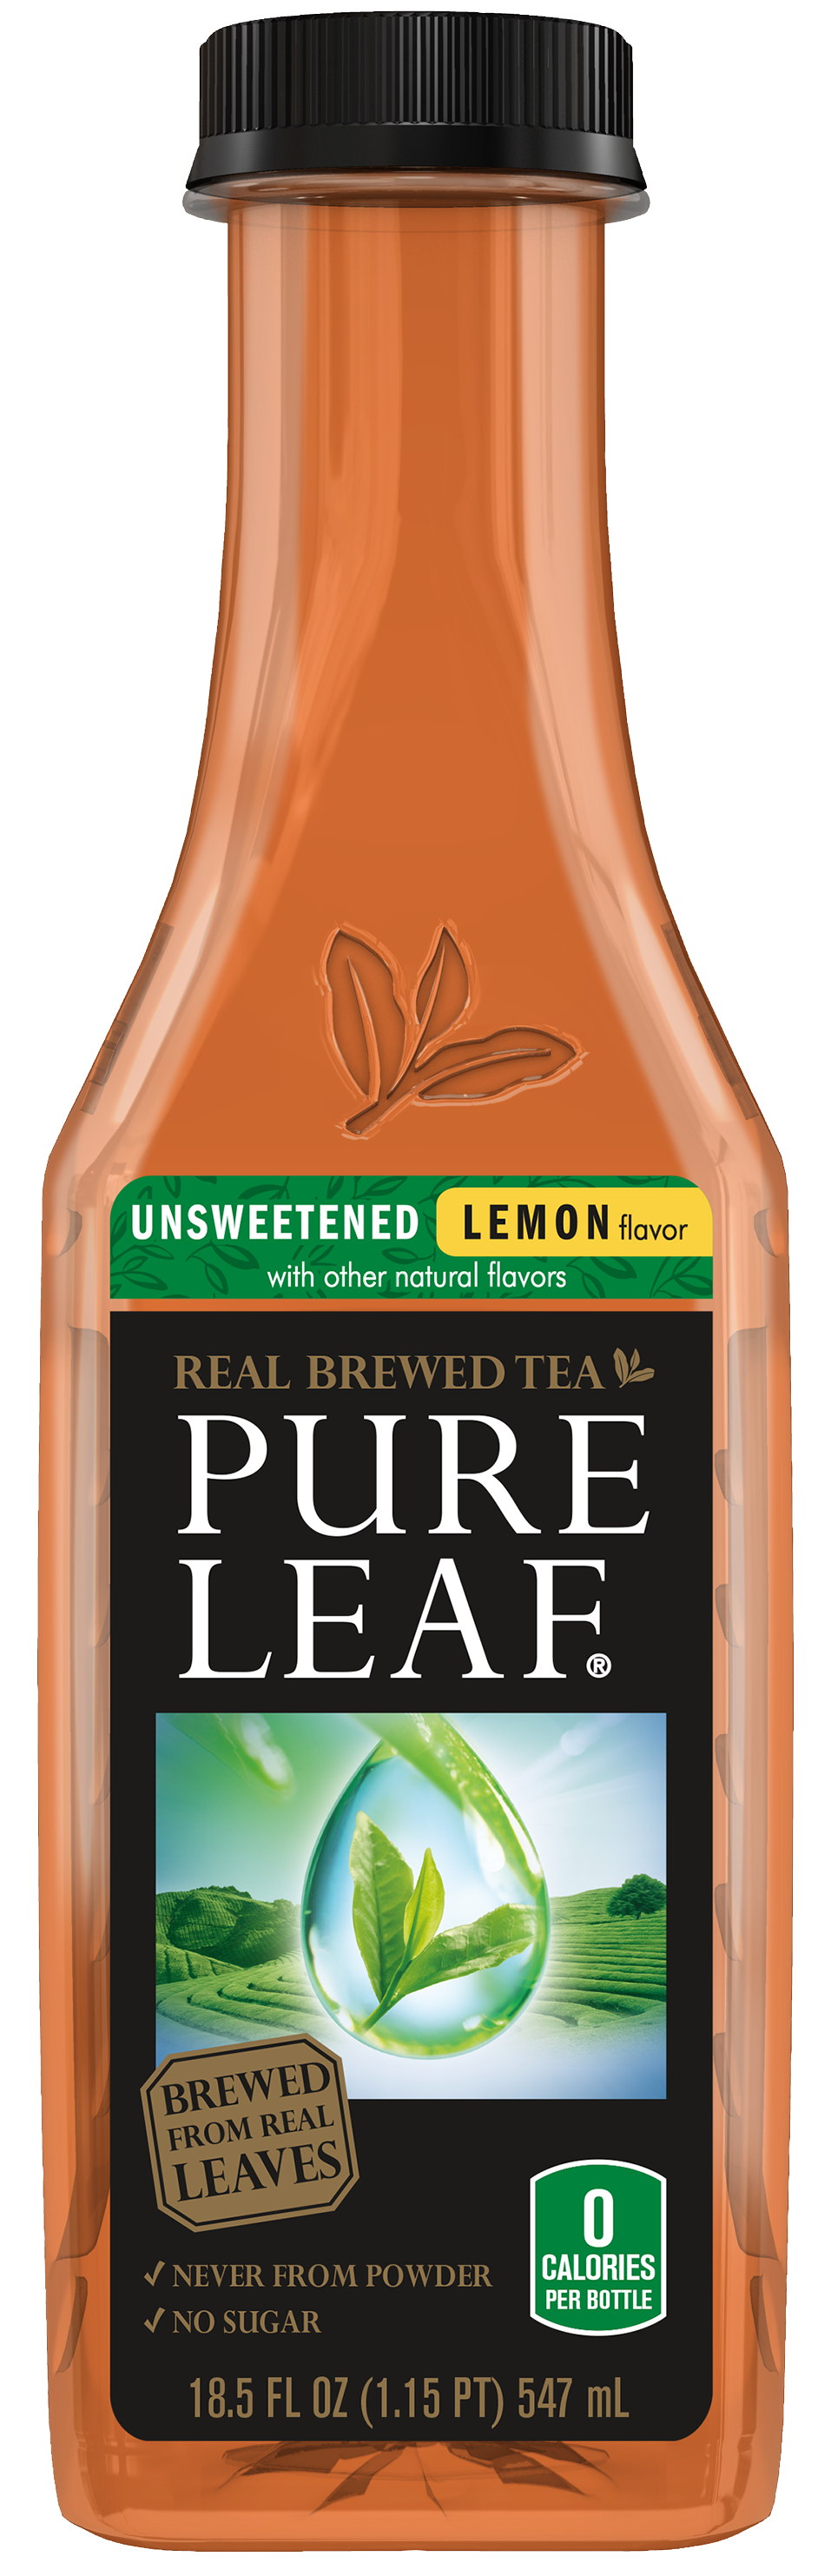 Pure Leaf Unsweetened Lemon Tea